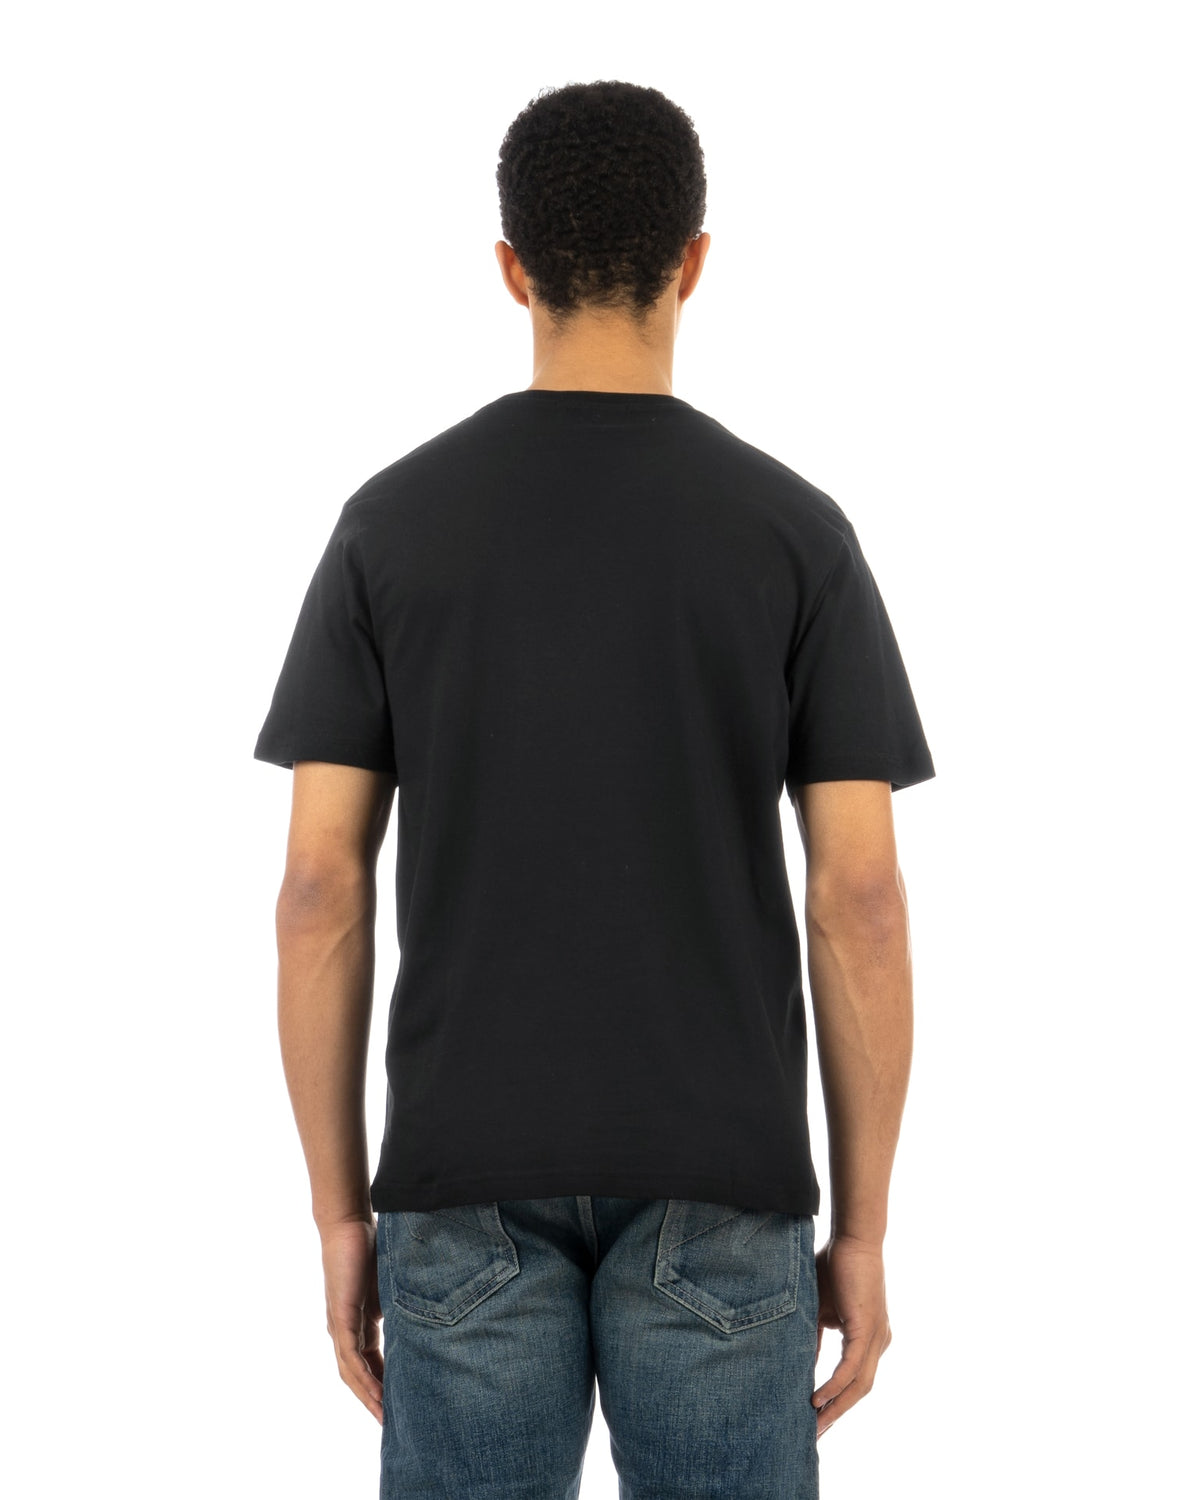 Medicom Toy | x AMPLIFIER Hide T-Shirt (design H) Black - Concrete